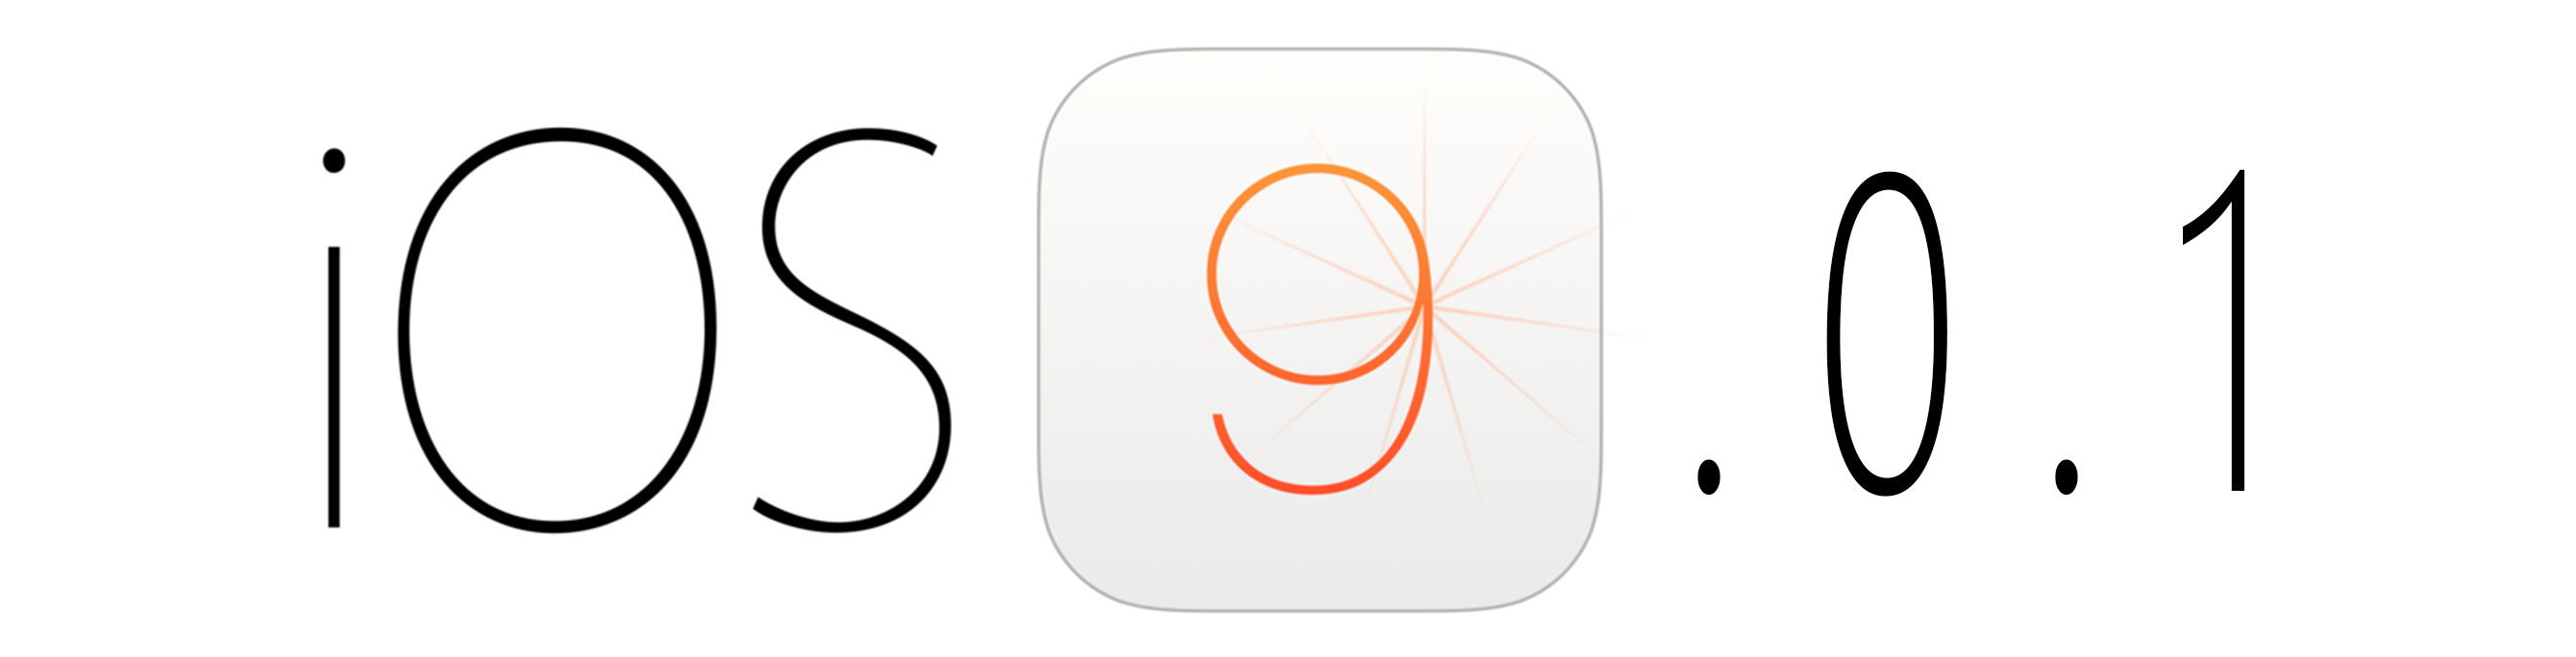 دانلود نسخه نهایی iOS 9.0.1 با لینک مستقیم